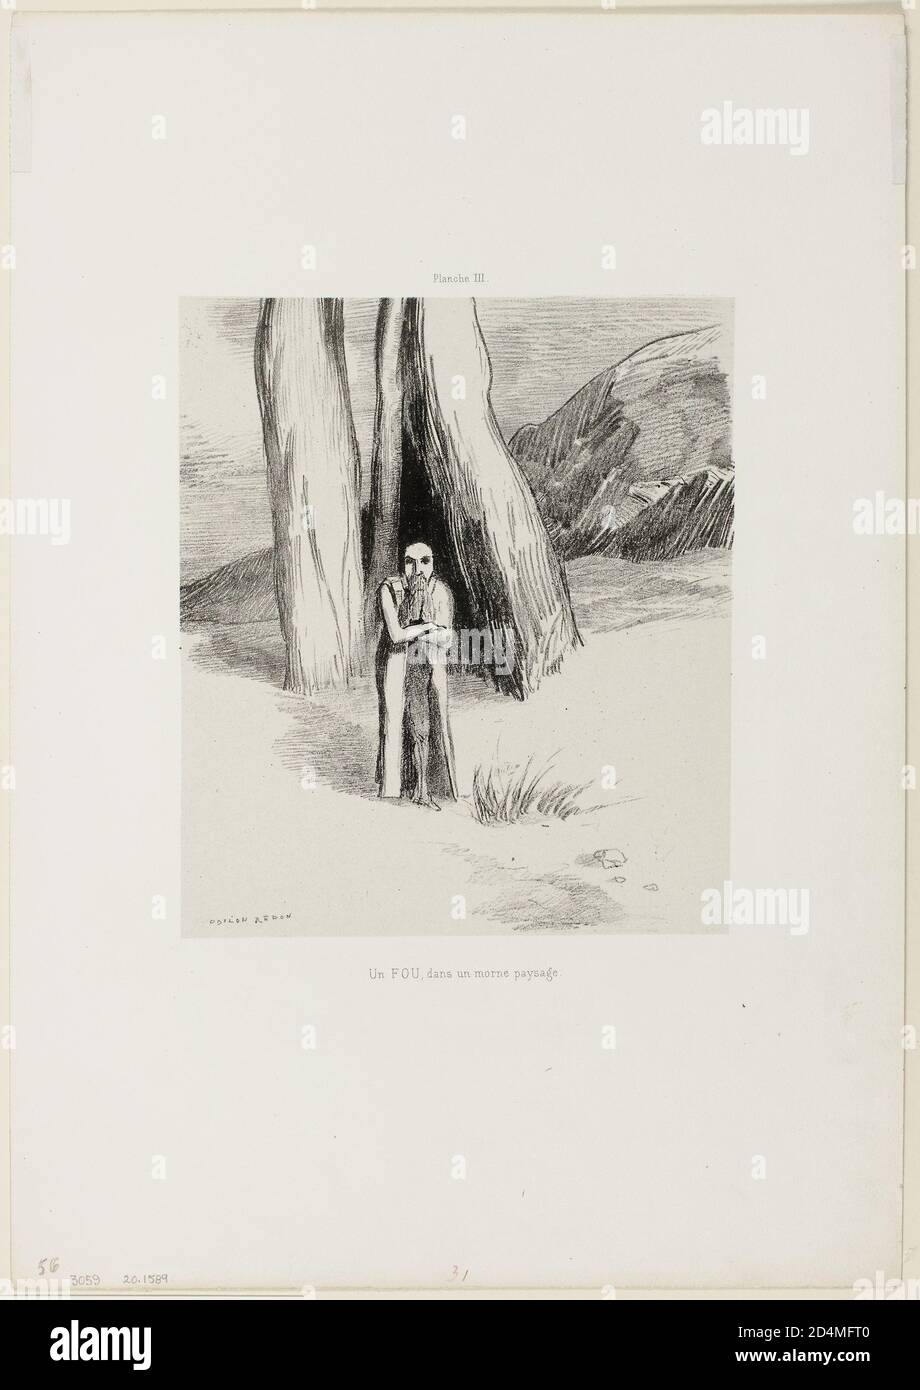 Un Madman in un paesaggio dismale; piatto 3 di 6 - Data: 1885; Odilon Redon; francese; 1840-1916 Foto Stock